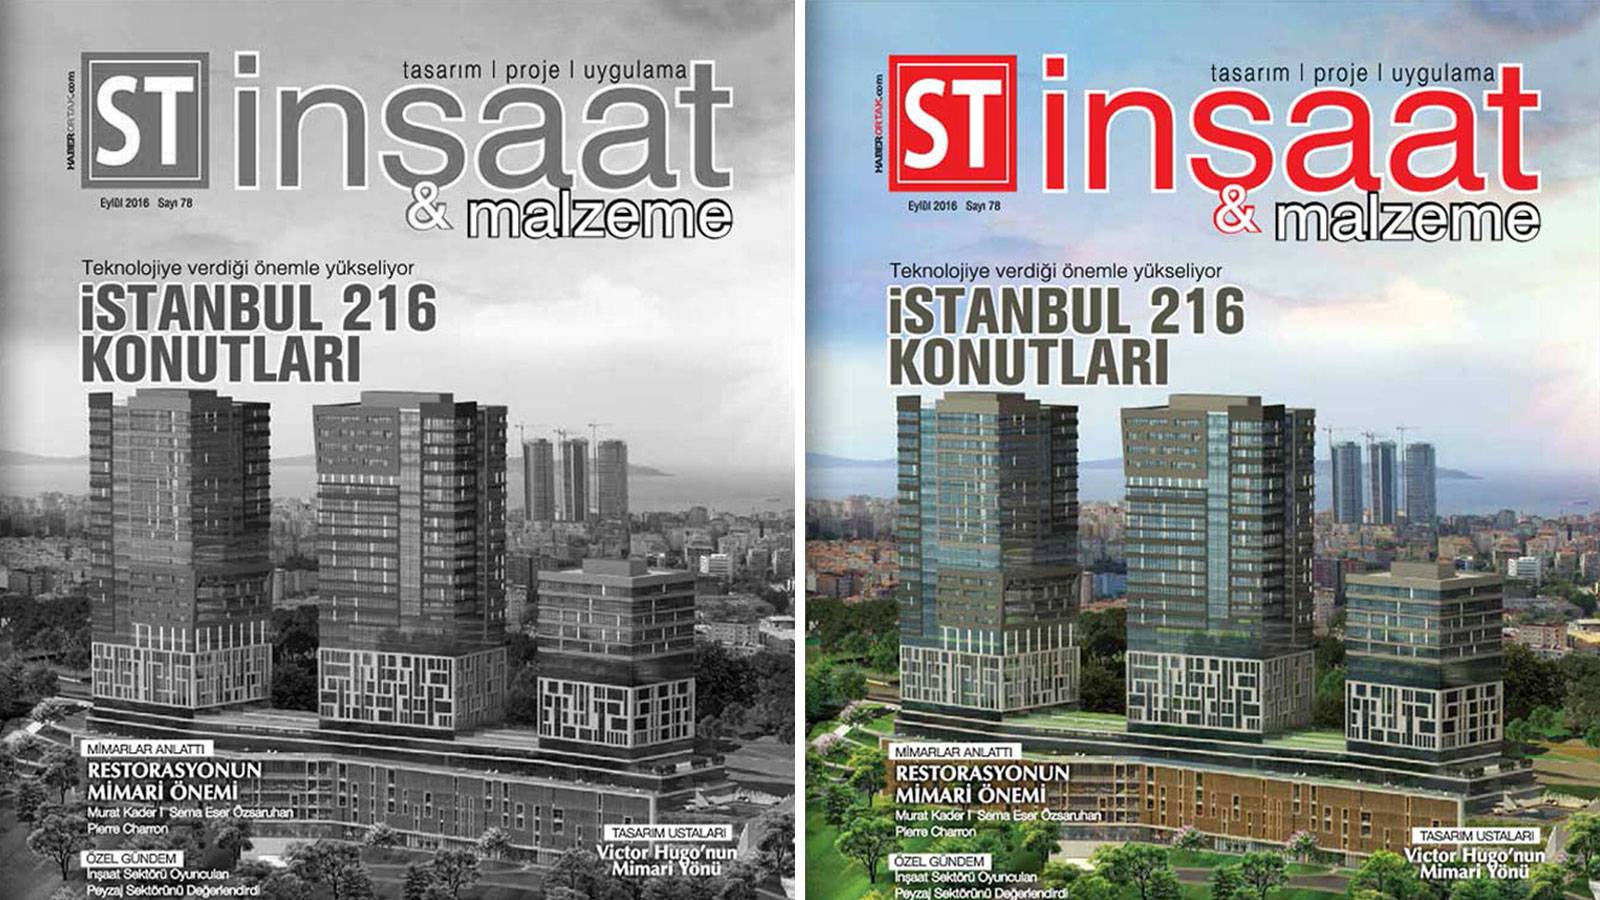 15.09.2016 S.T. İnşaat ve Malzeme Magazine host Murat Kader and Sema Eser Özsaruhan.